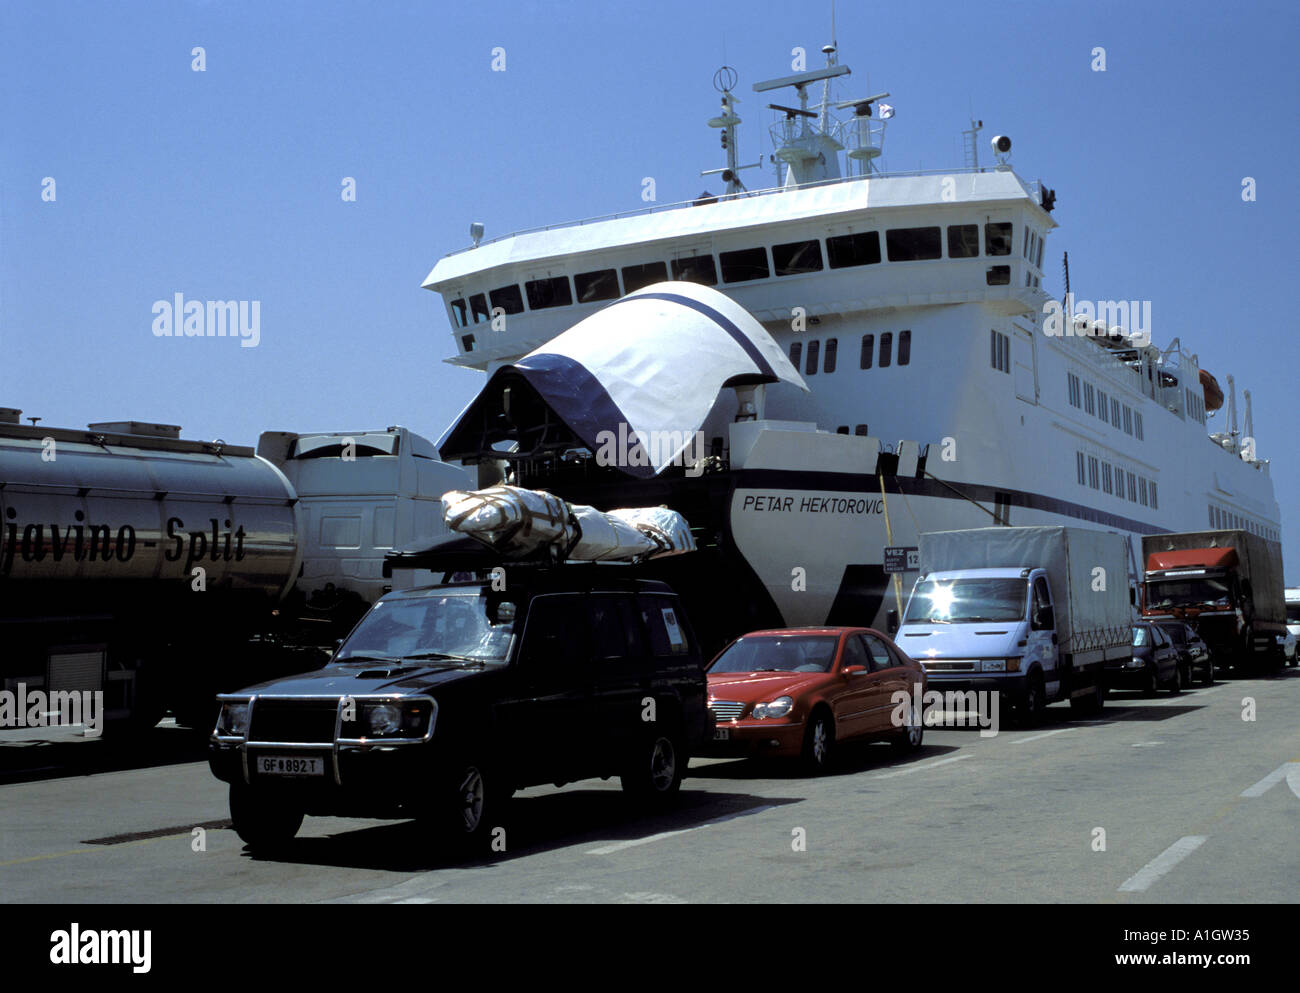 Voitures et fourgons de queue de conseil Car-ferry Jadrolinija amarré au port de Split Croatie Dalmatie Makarska Mer Adriatique Mai 2004 Banque D'Images